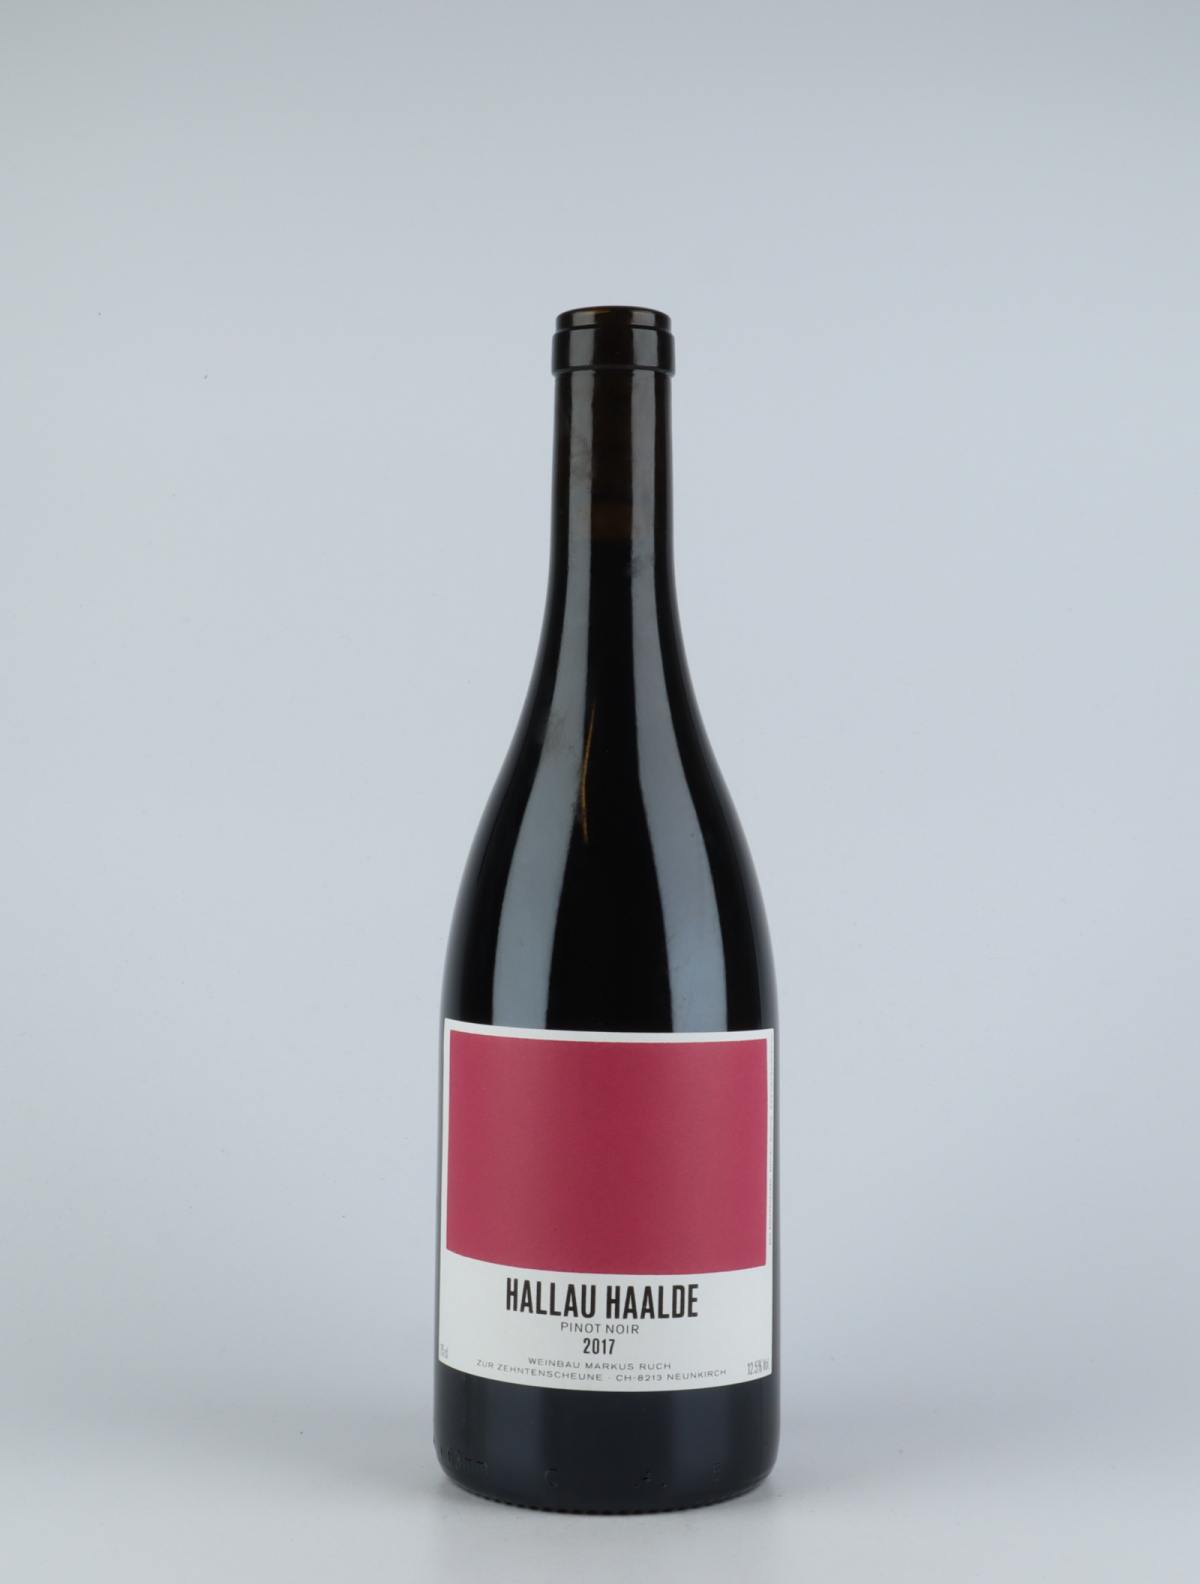 A bottle 2017 Hallau Haalde Red wine from Markus Ruch, Schaffhausen in Switzerland